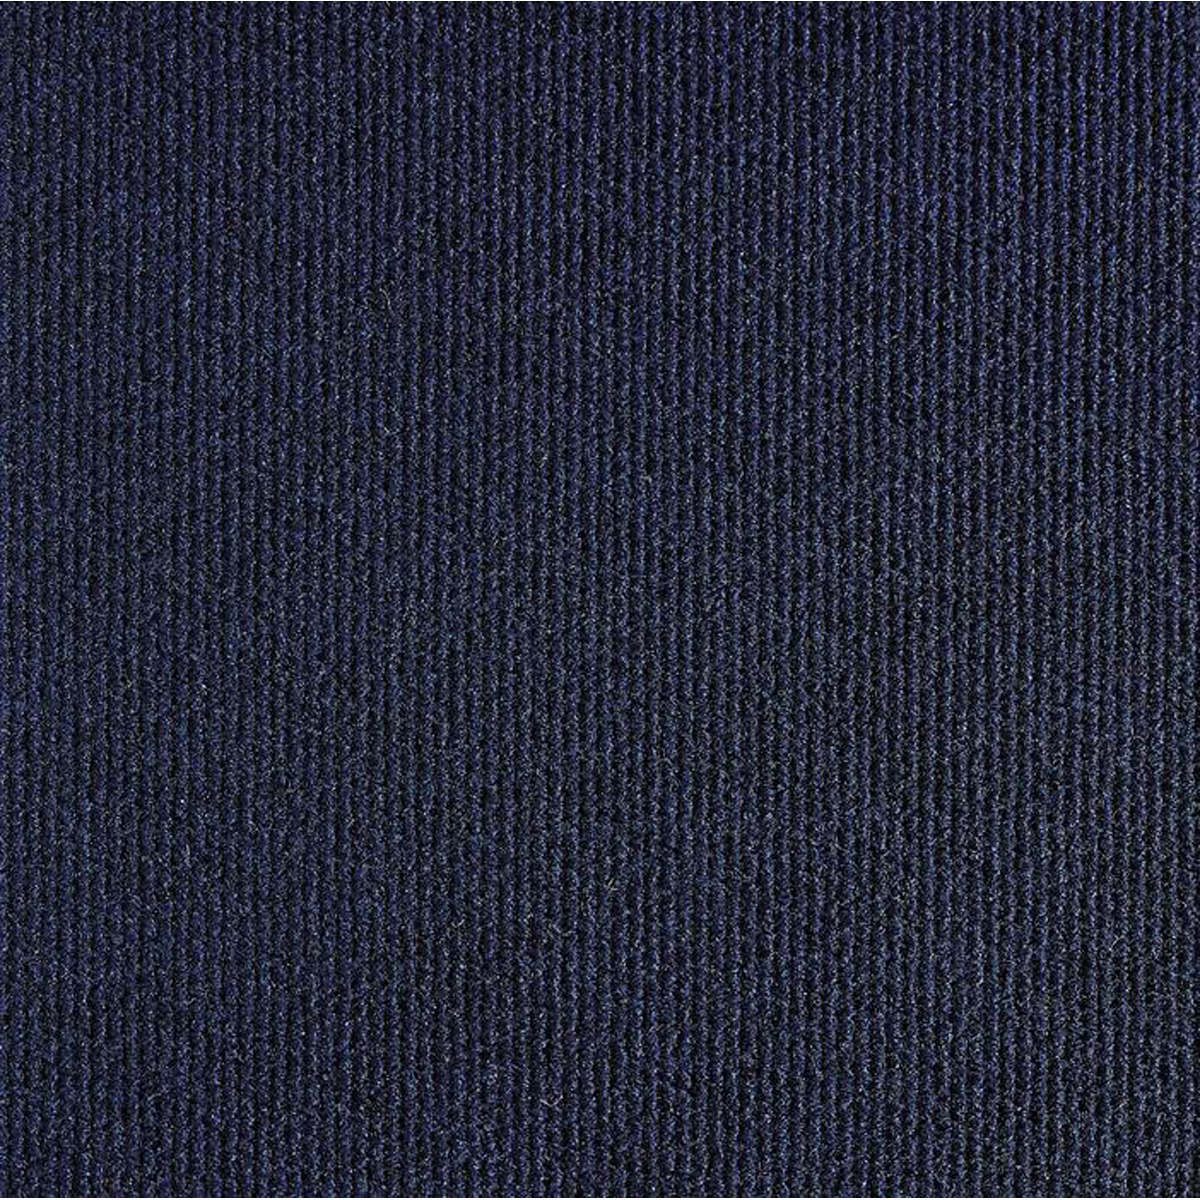 Messetæppe rip/skum 2x35m - Mørk blå